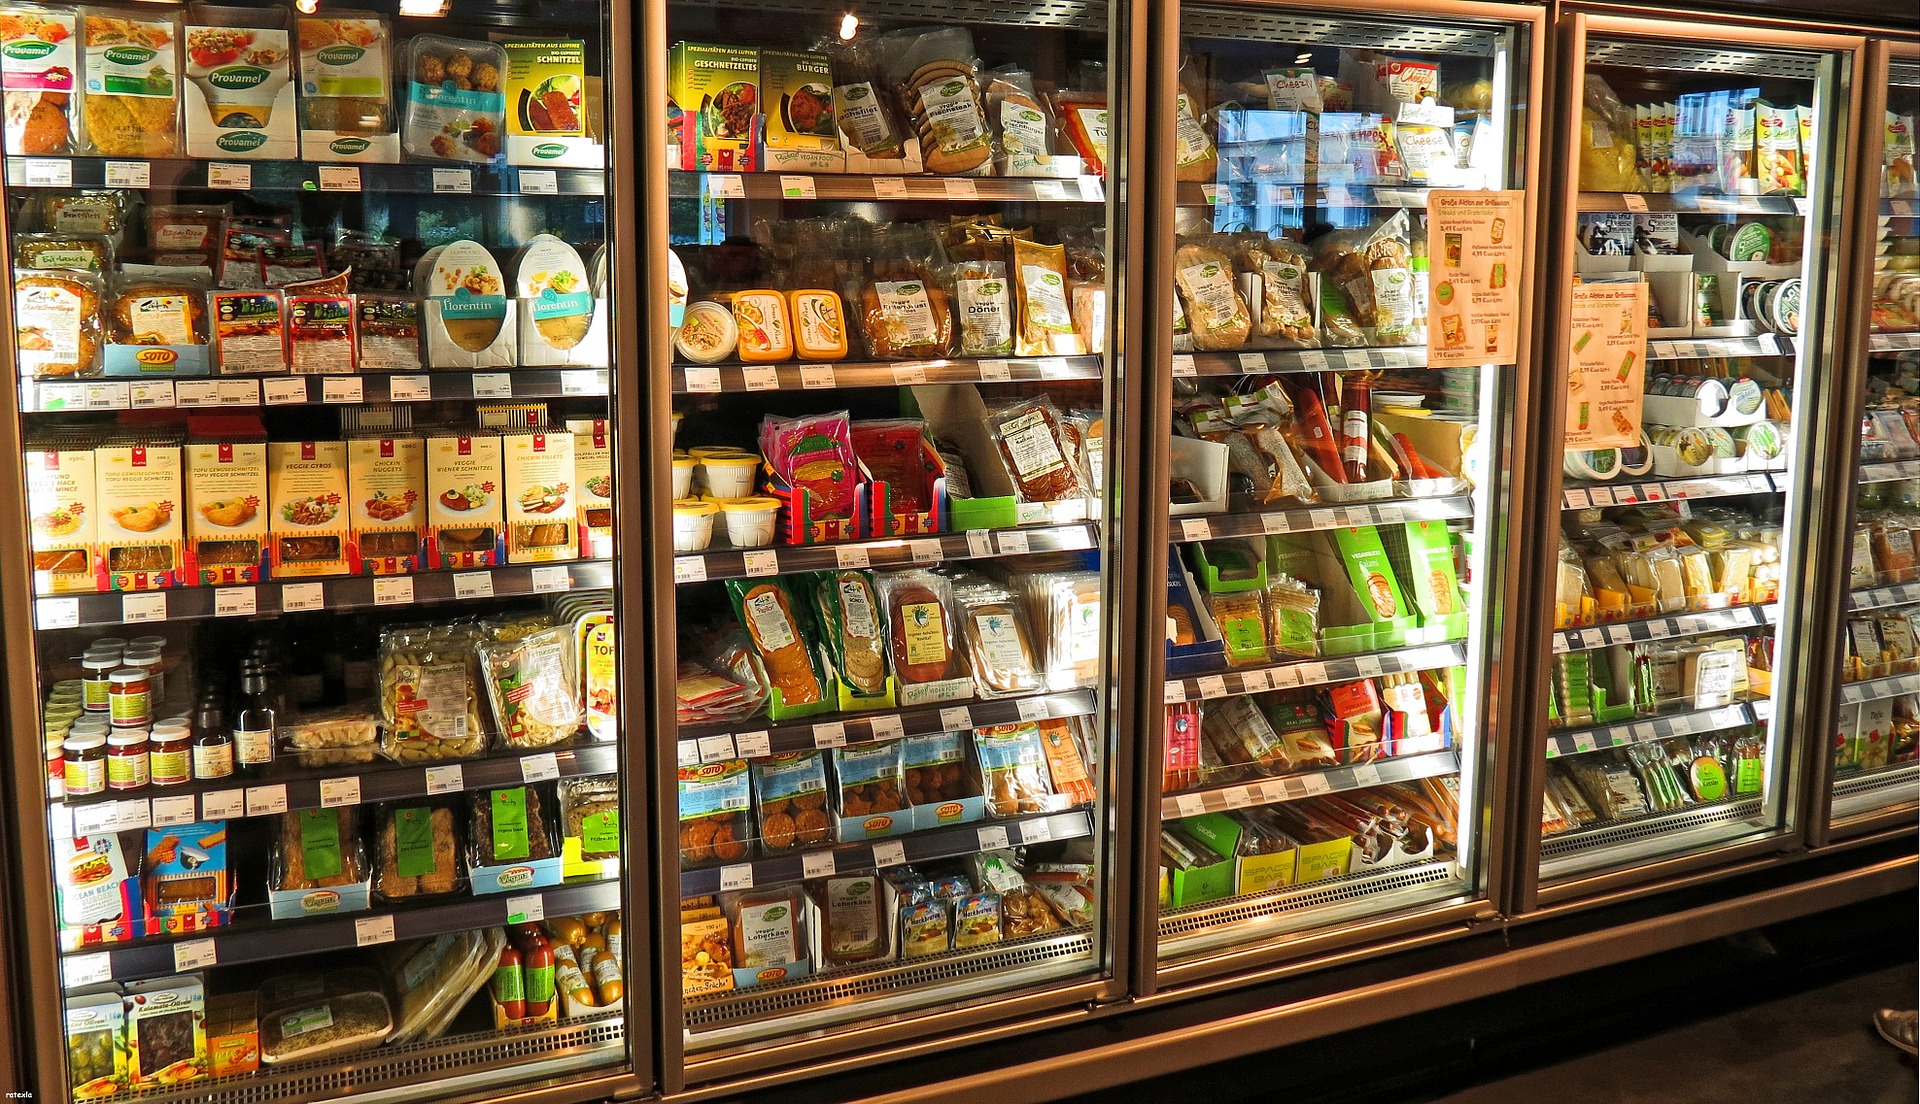 Camara frigorífica expositora de un supermercado